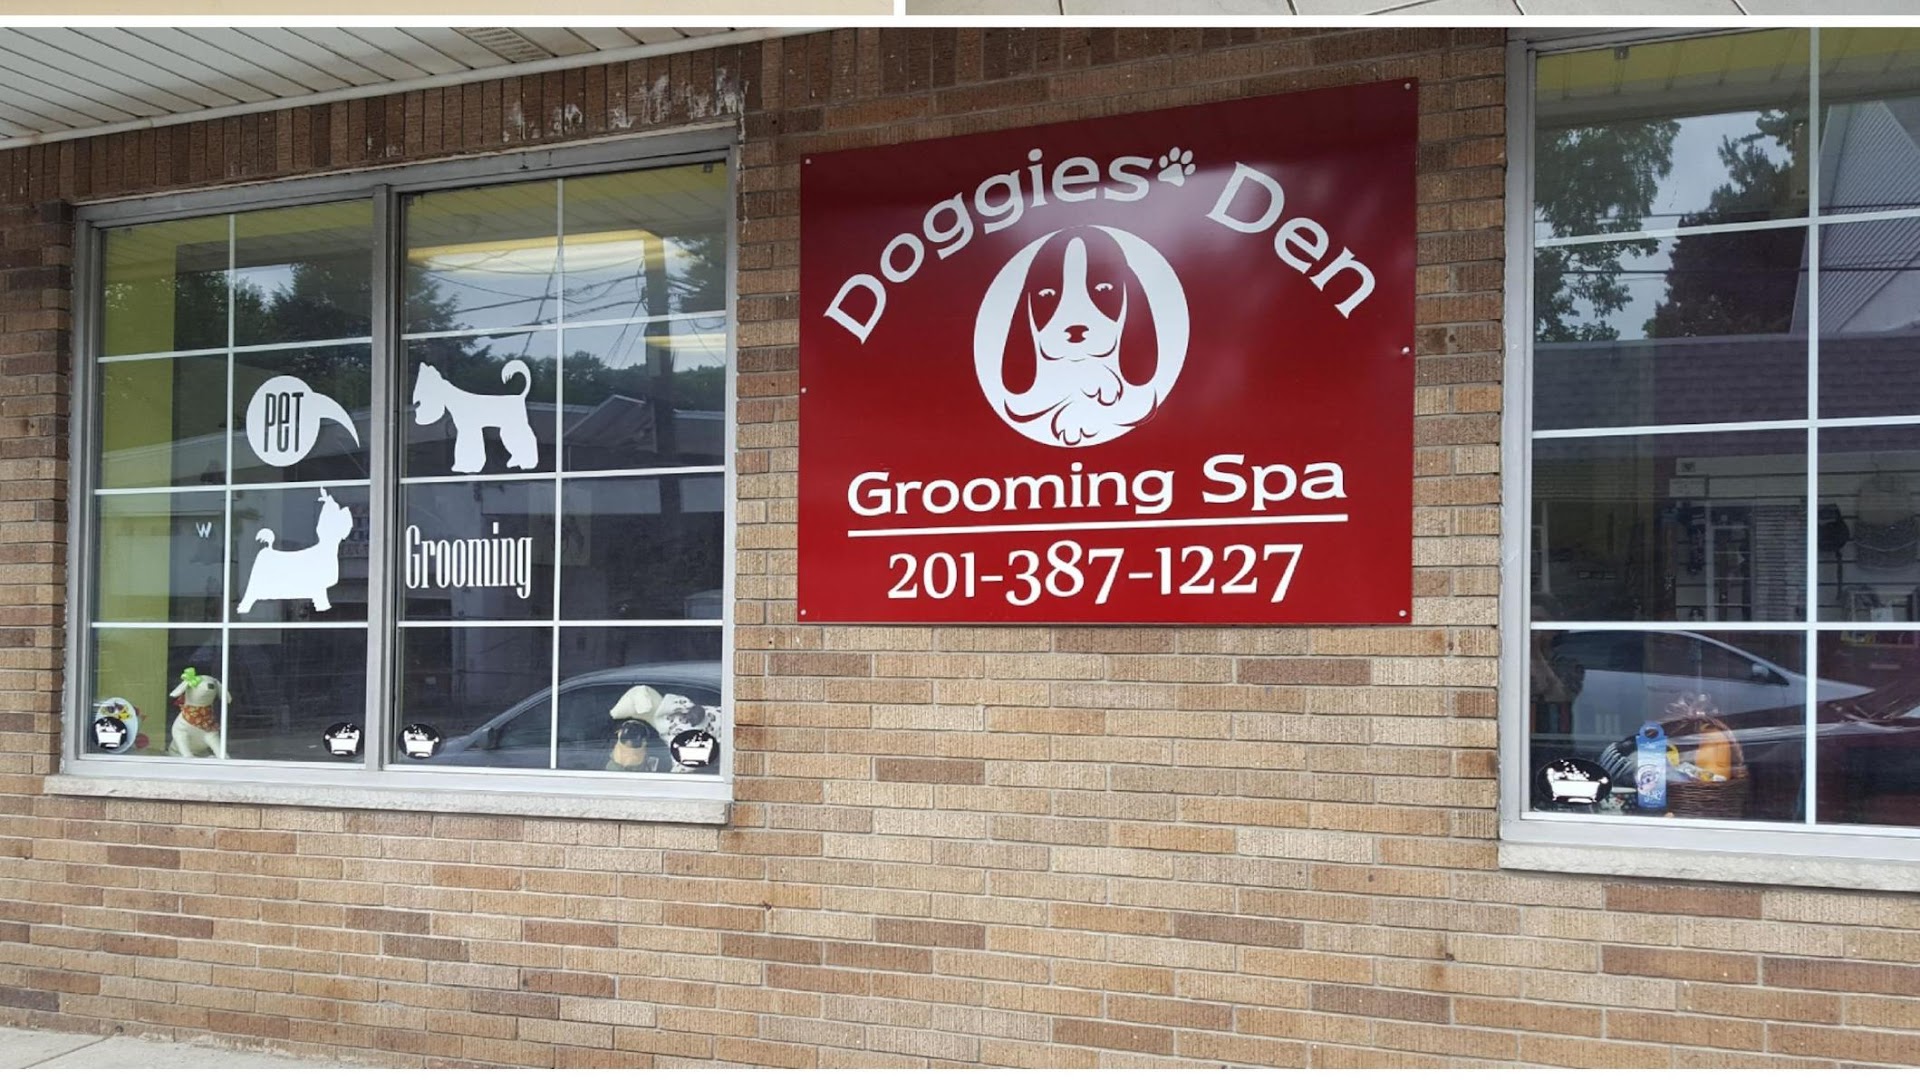 Doggies' Den Grooming